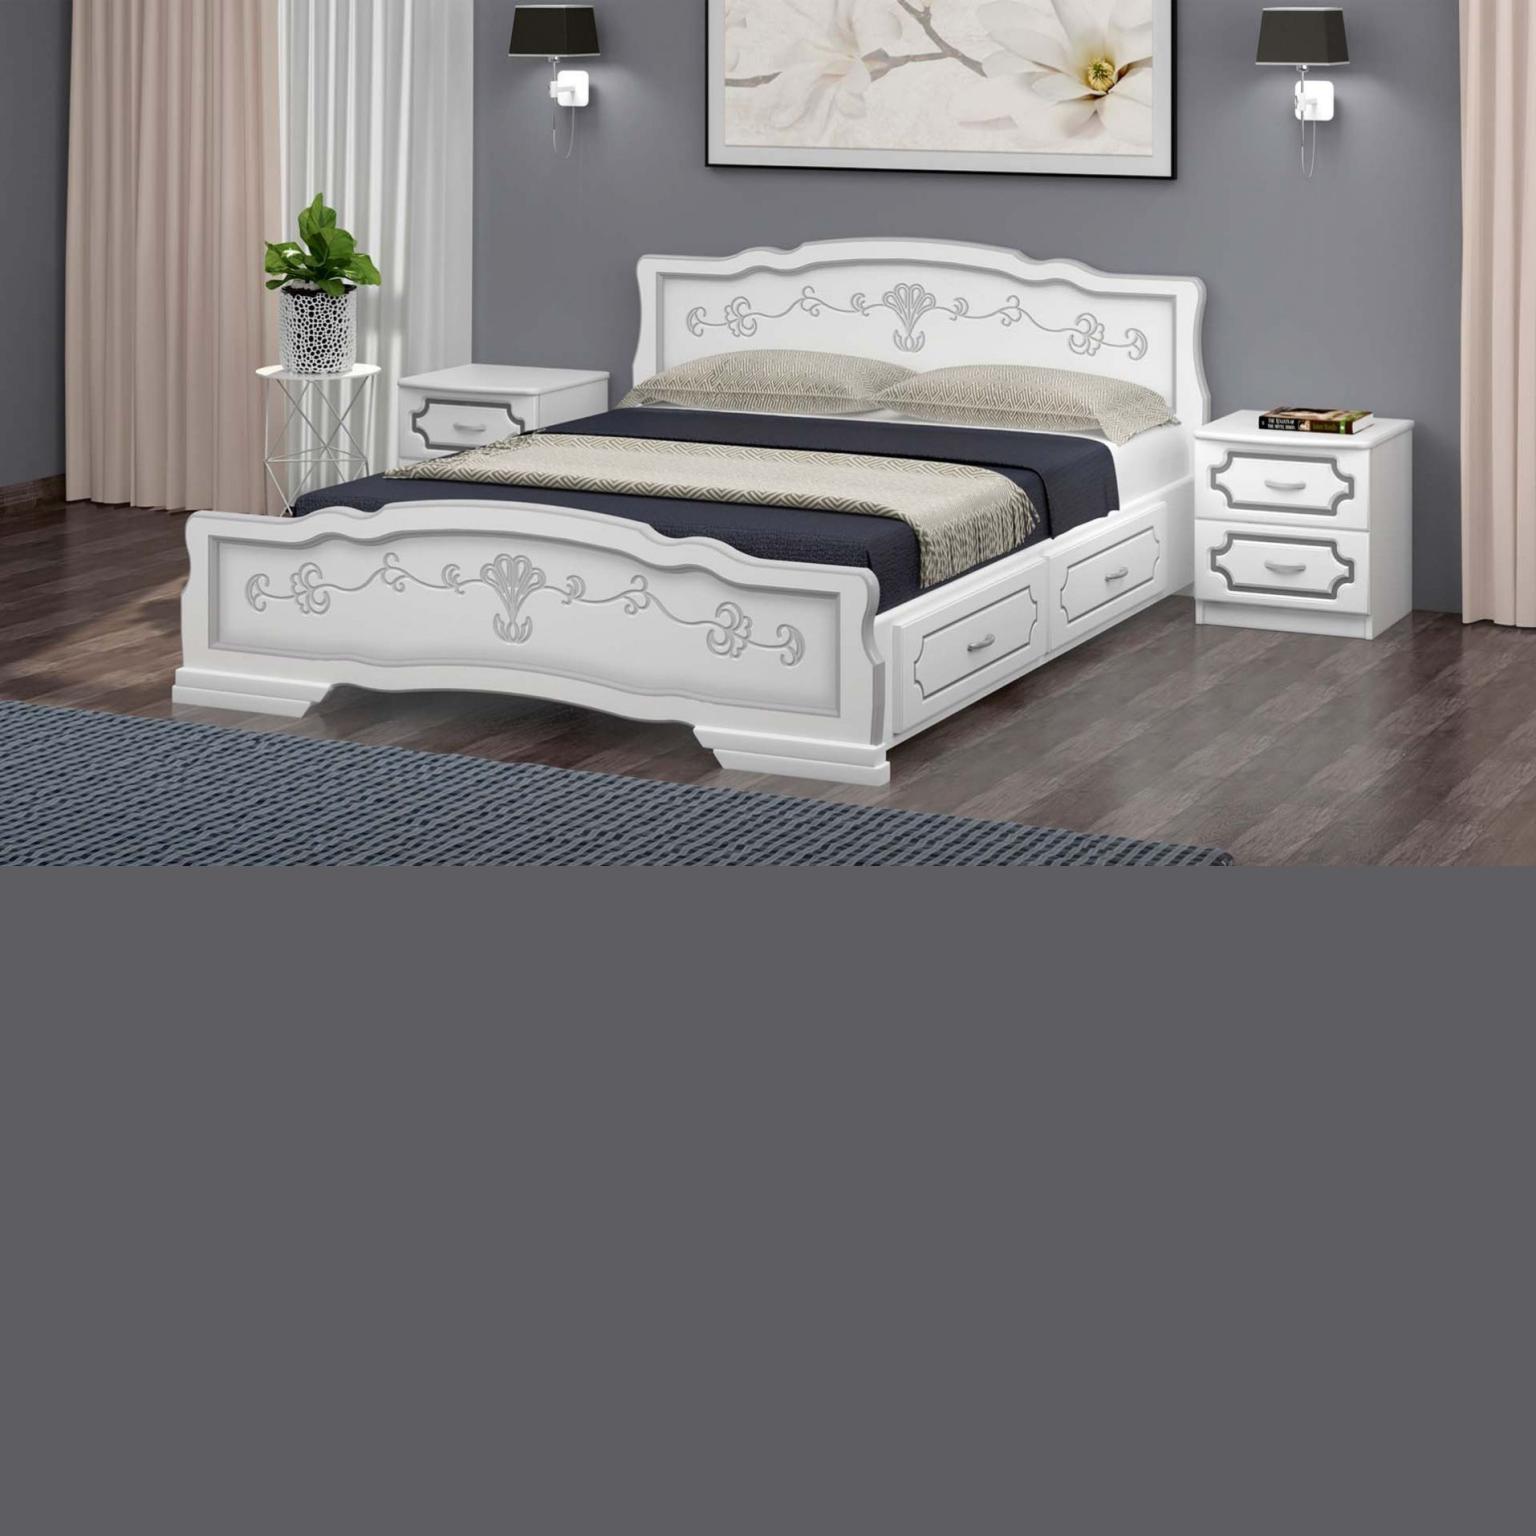 Кровать Карина-6 белый жемчуг с ящиками